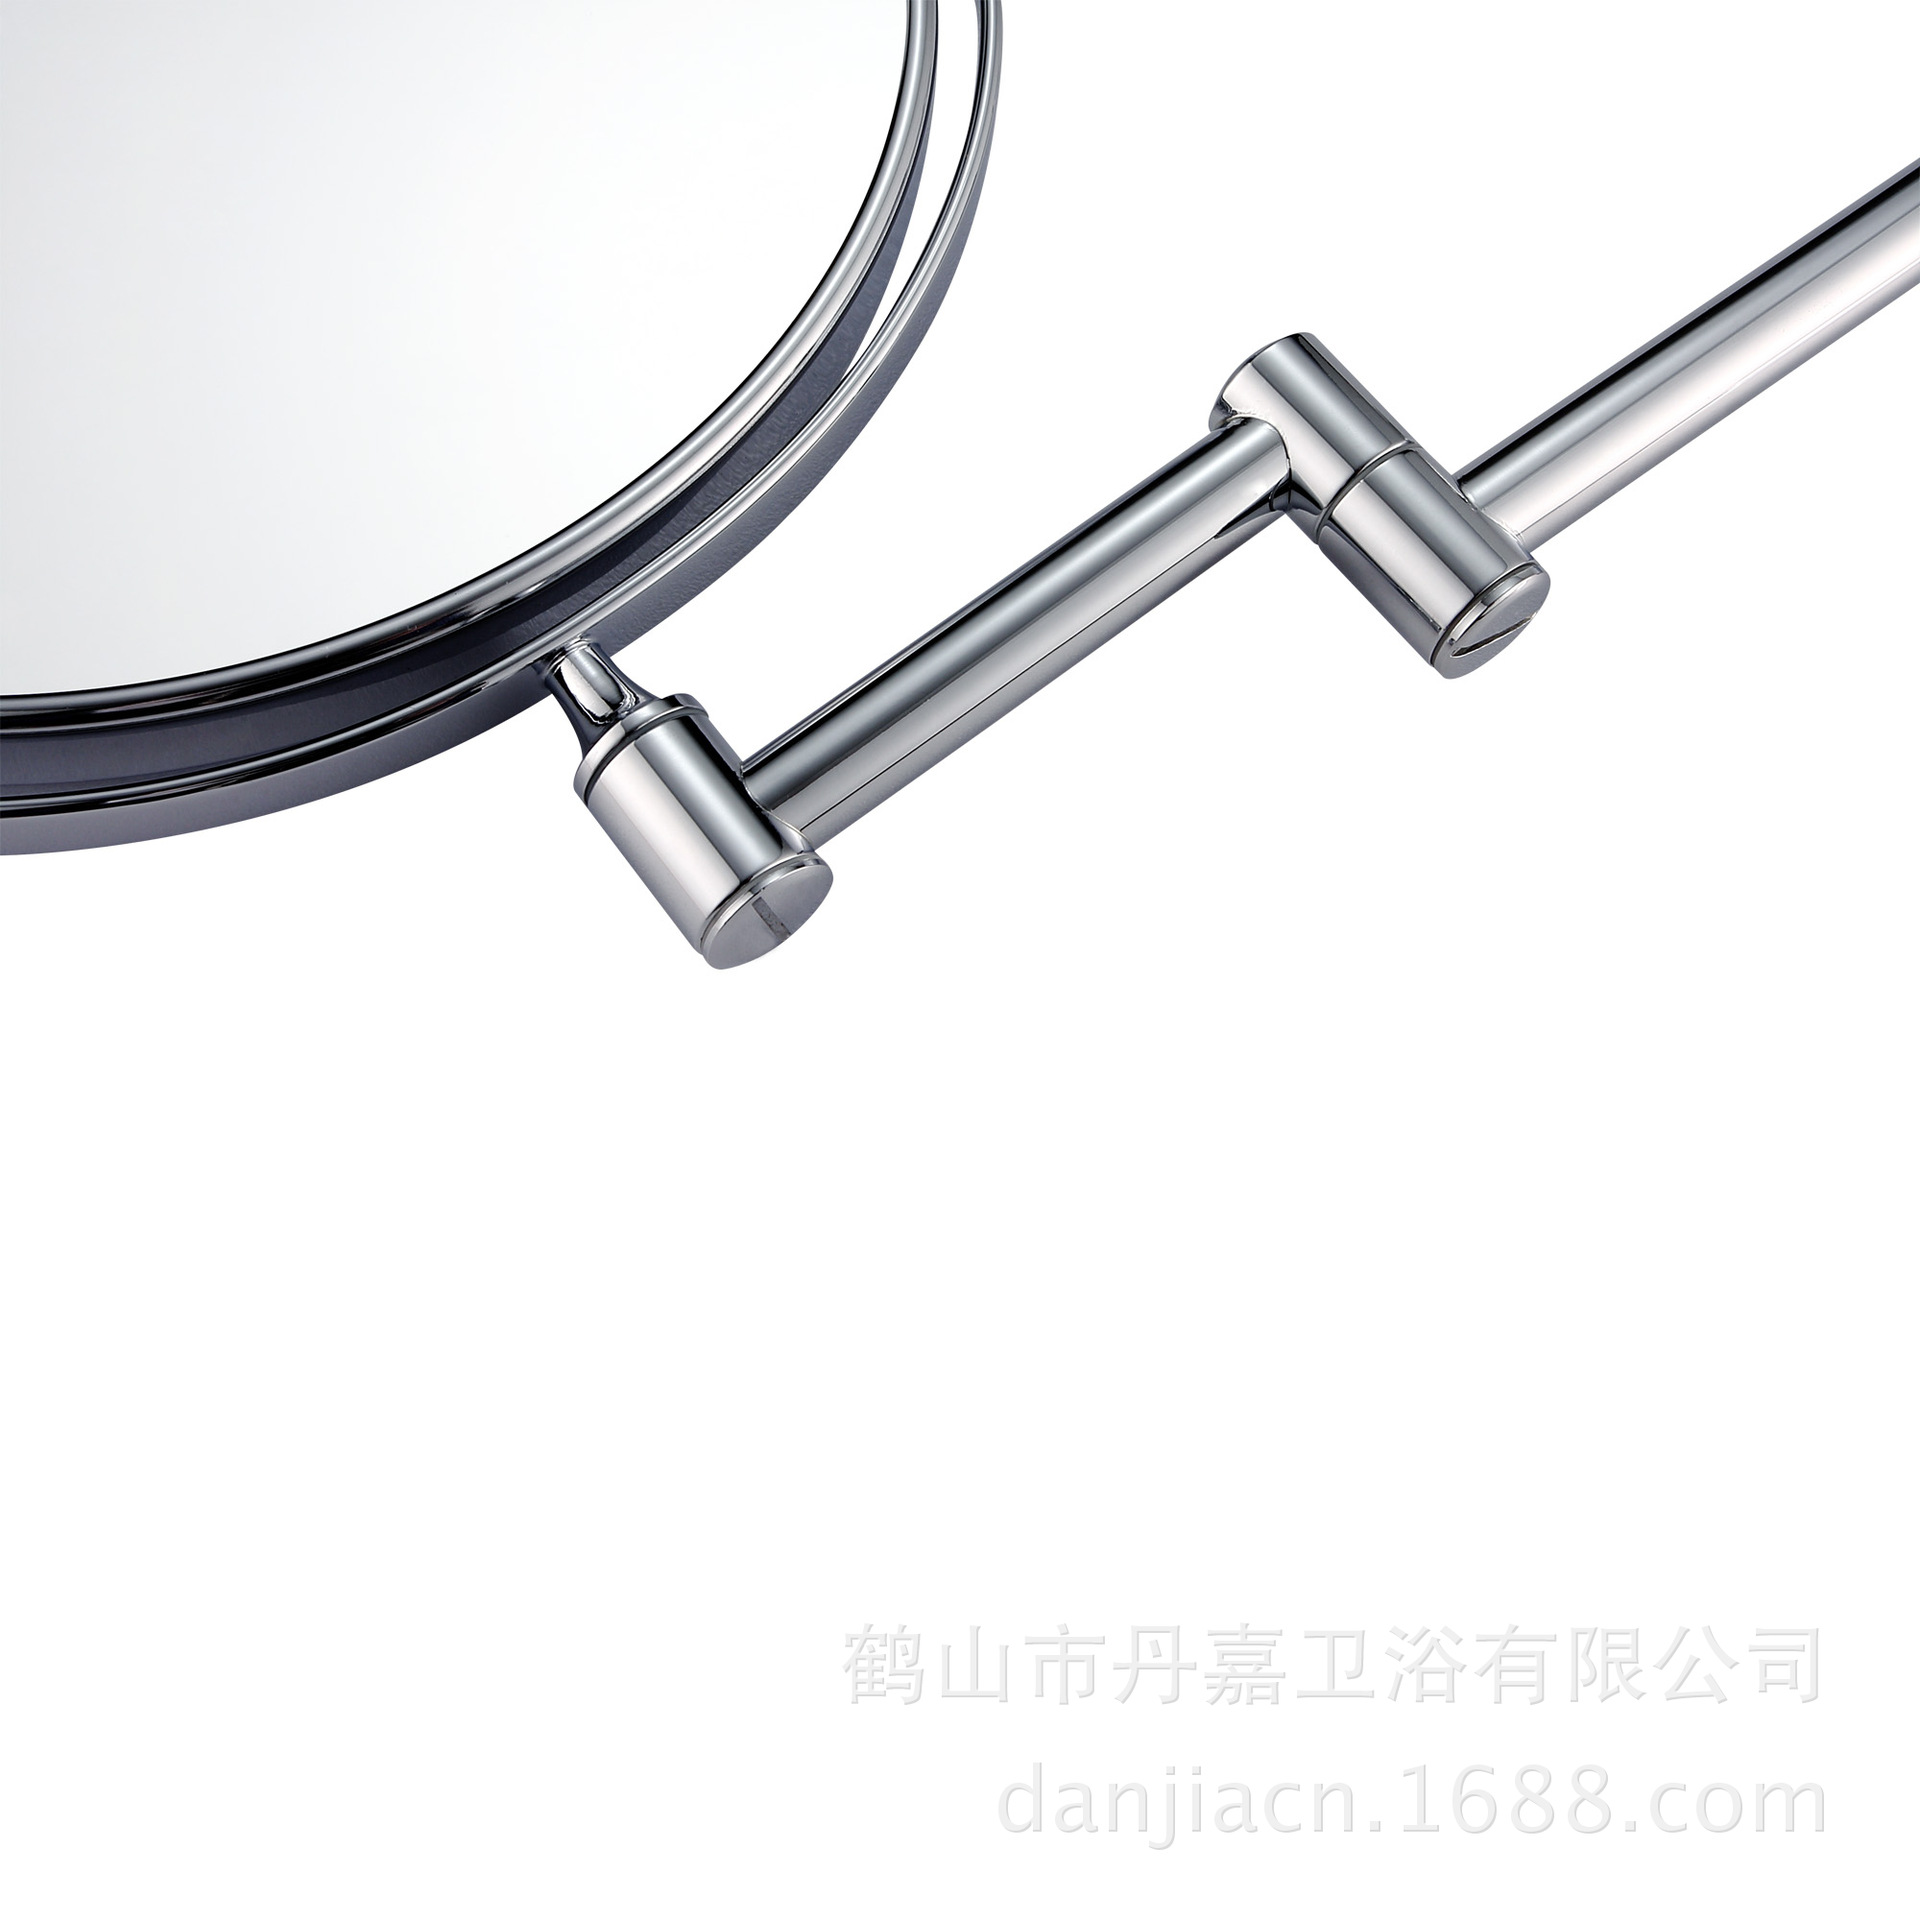 全铜浴室镜伸缩折叠旋转化妆镜双面效果1X/3X美容镜椭圆底座M03